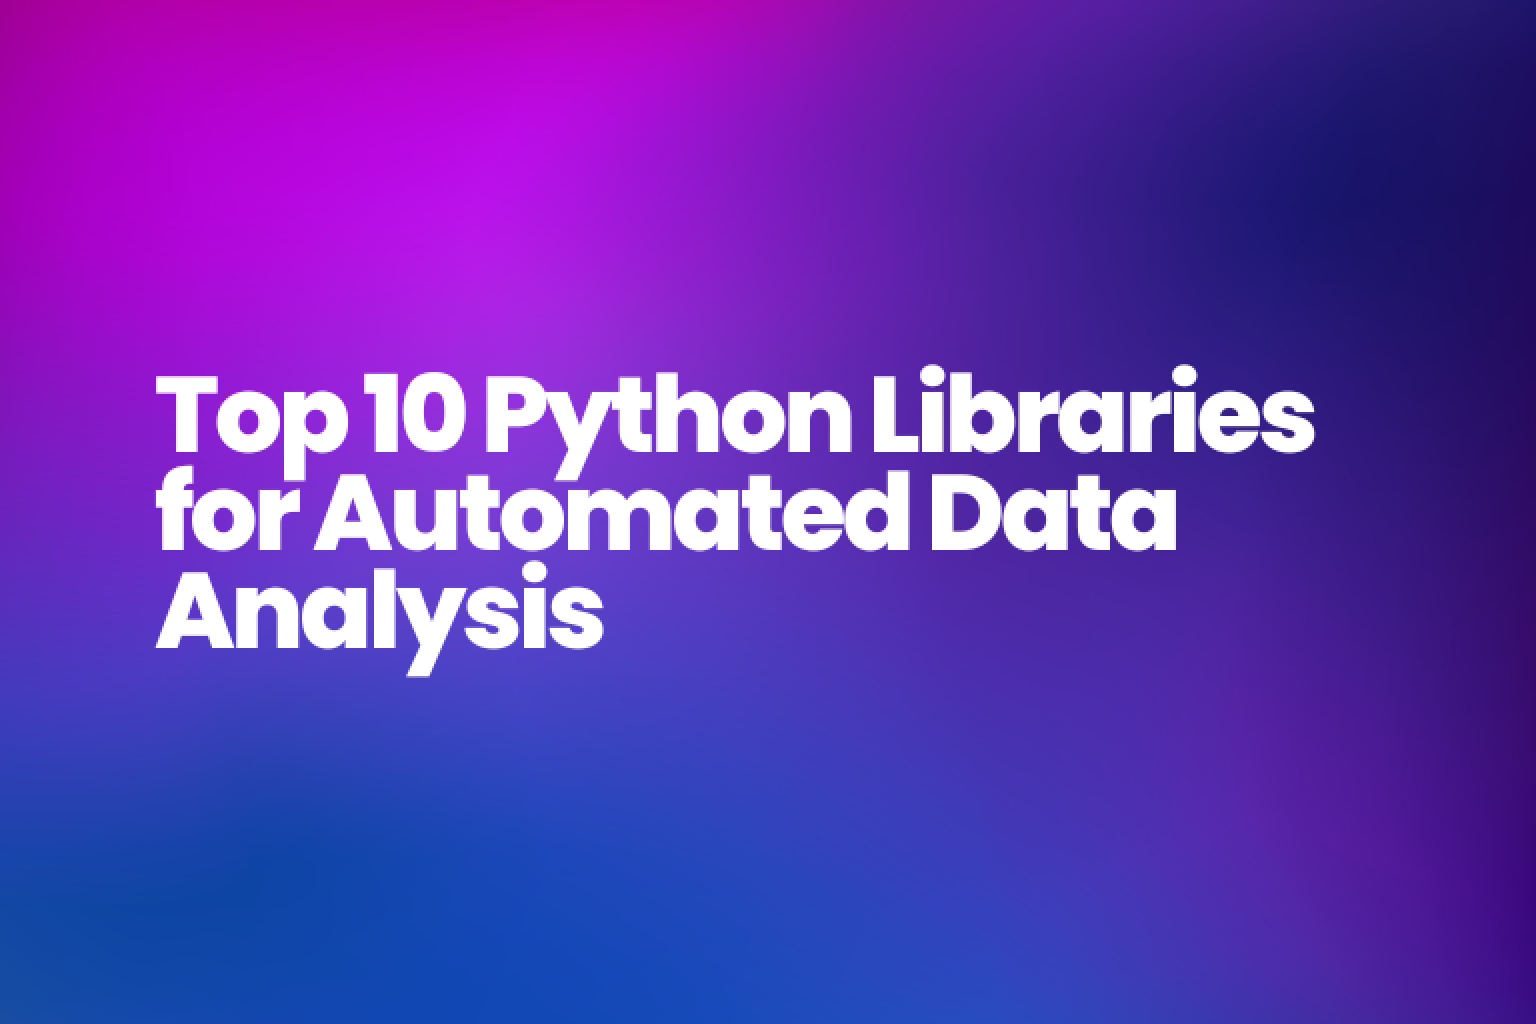 데이터 분석 작업을 자동화하고 대규모 데이터 세트에서 통찰력을 추출하기 위한 가장 필수적인 Python 라이브러리에 대한 포괄적인 안내서입니다.